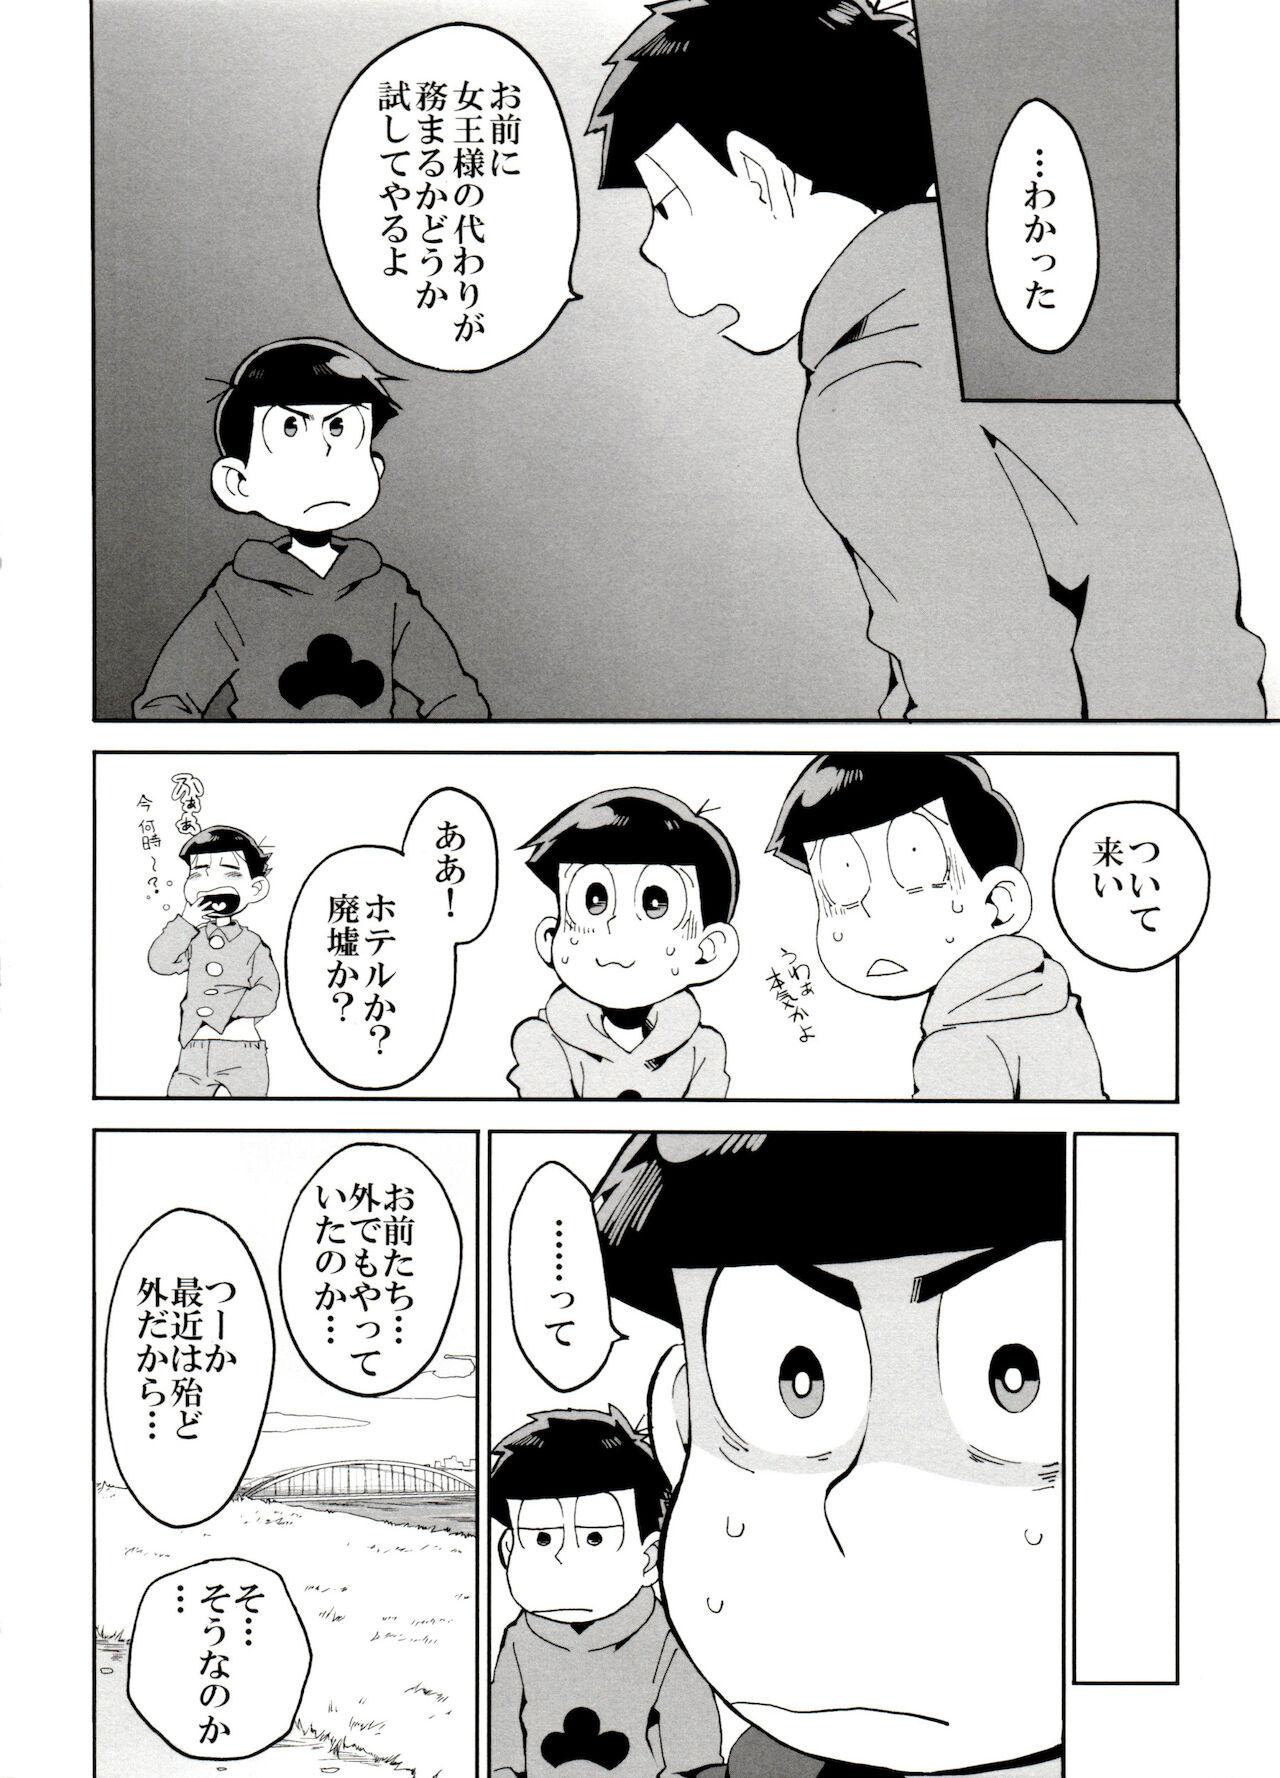 Hung SM Matsu 2 - Osomatsu san Banging - Page 6